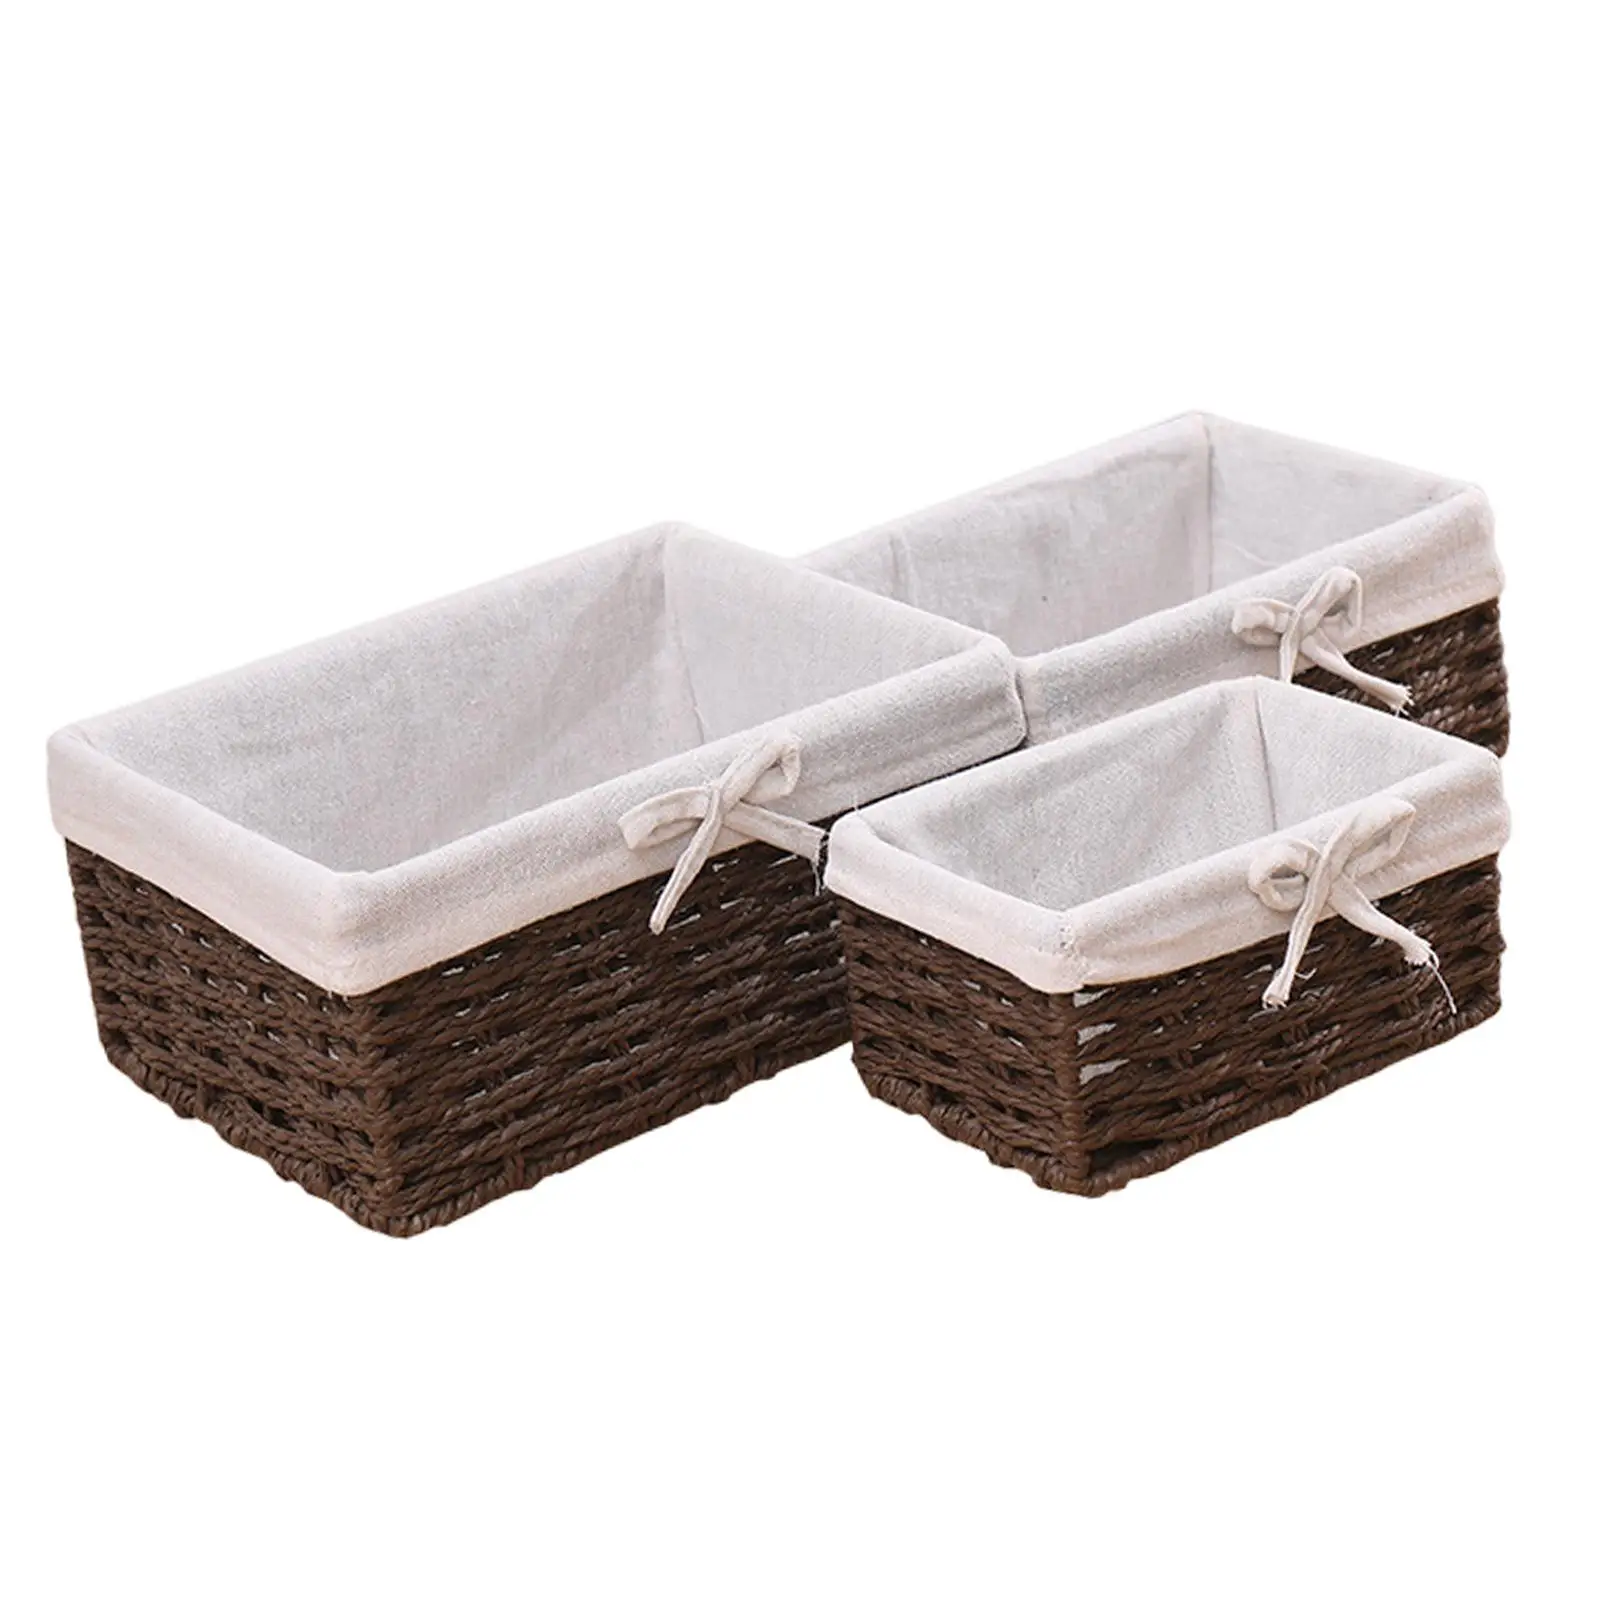 3x Woven Storage Baskets Gift Desktop Sundries Organizer for Breakfast Bread